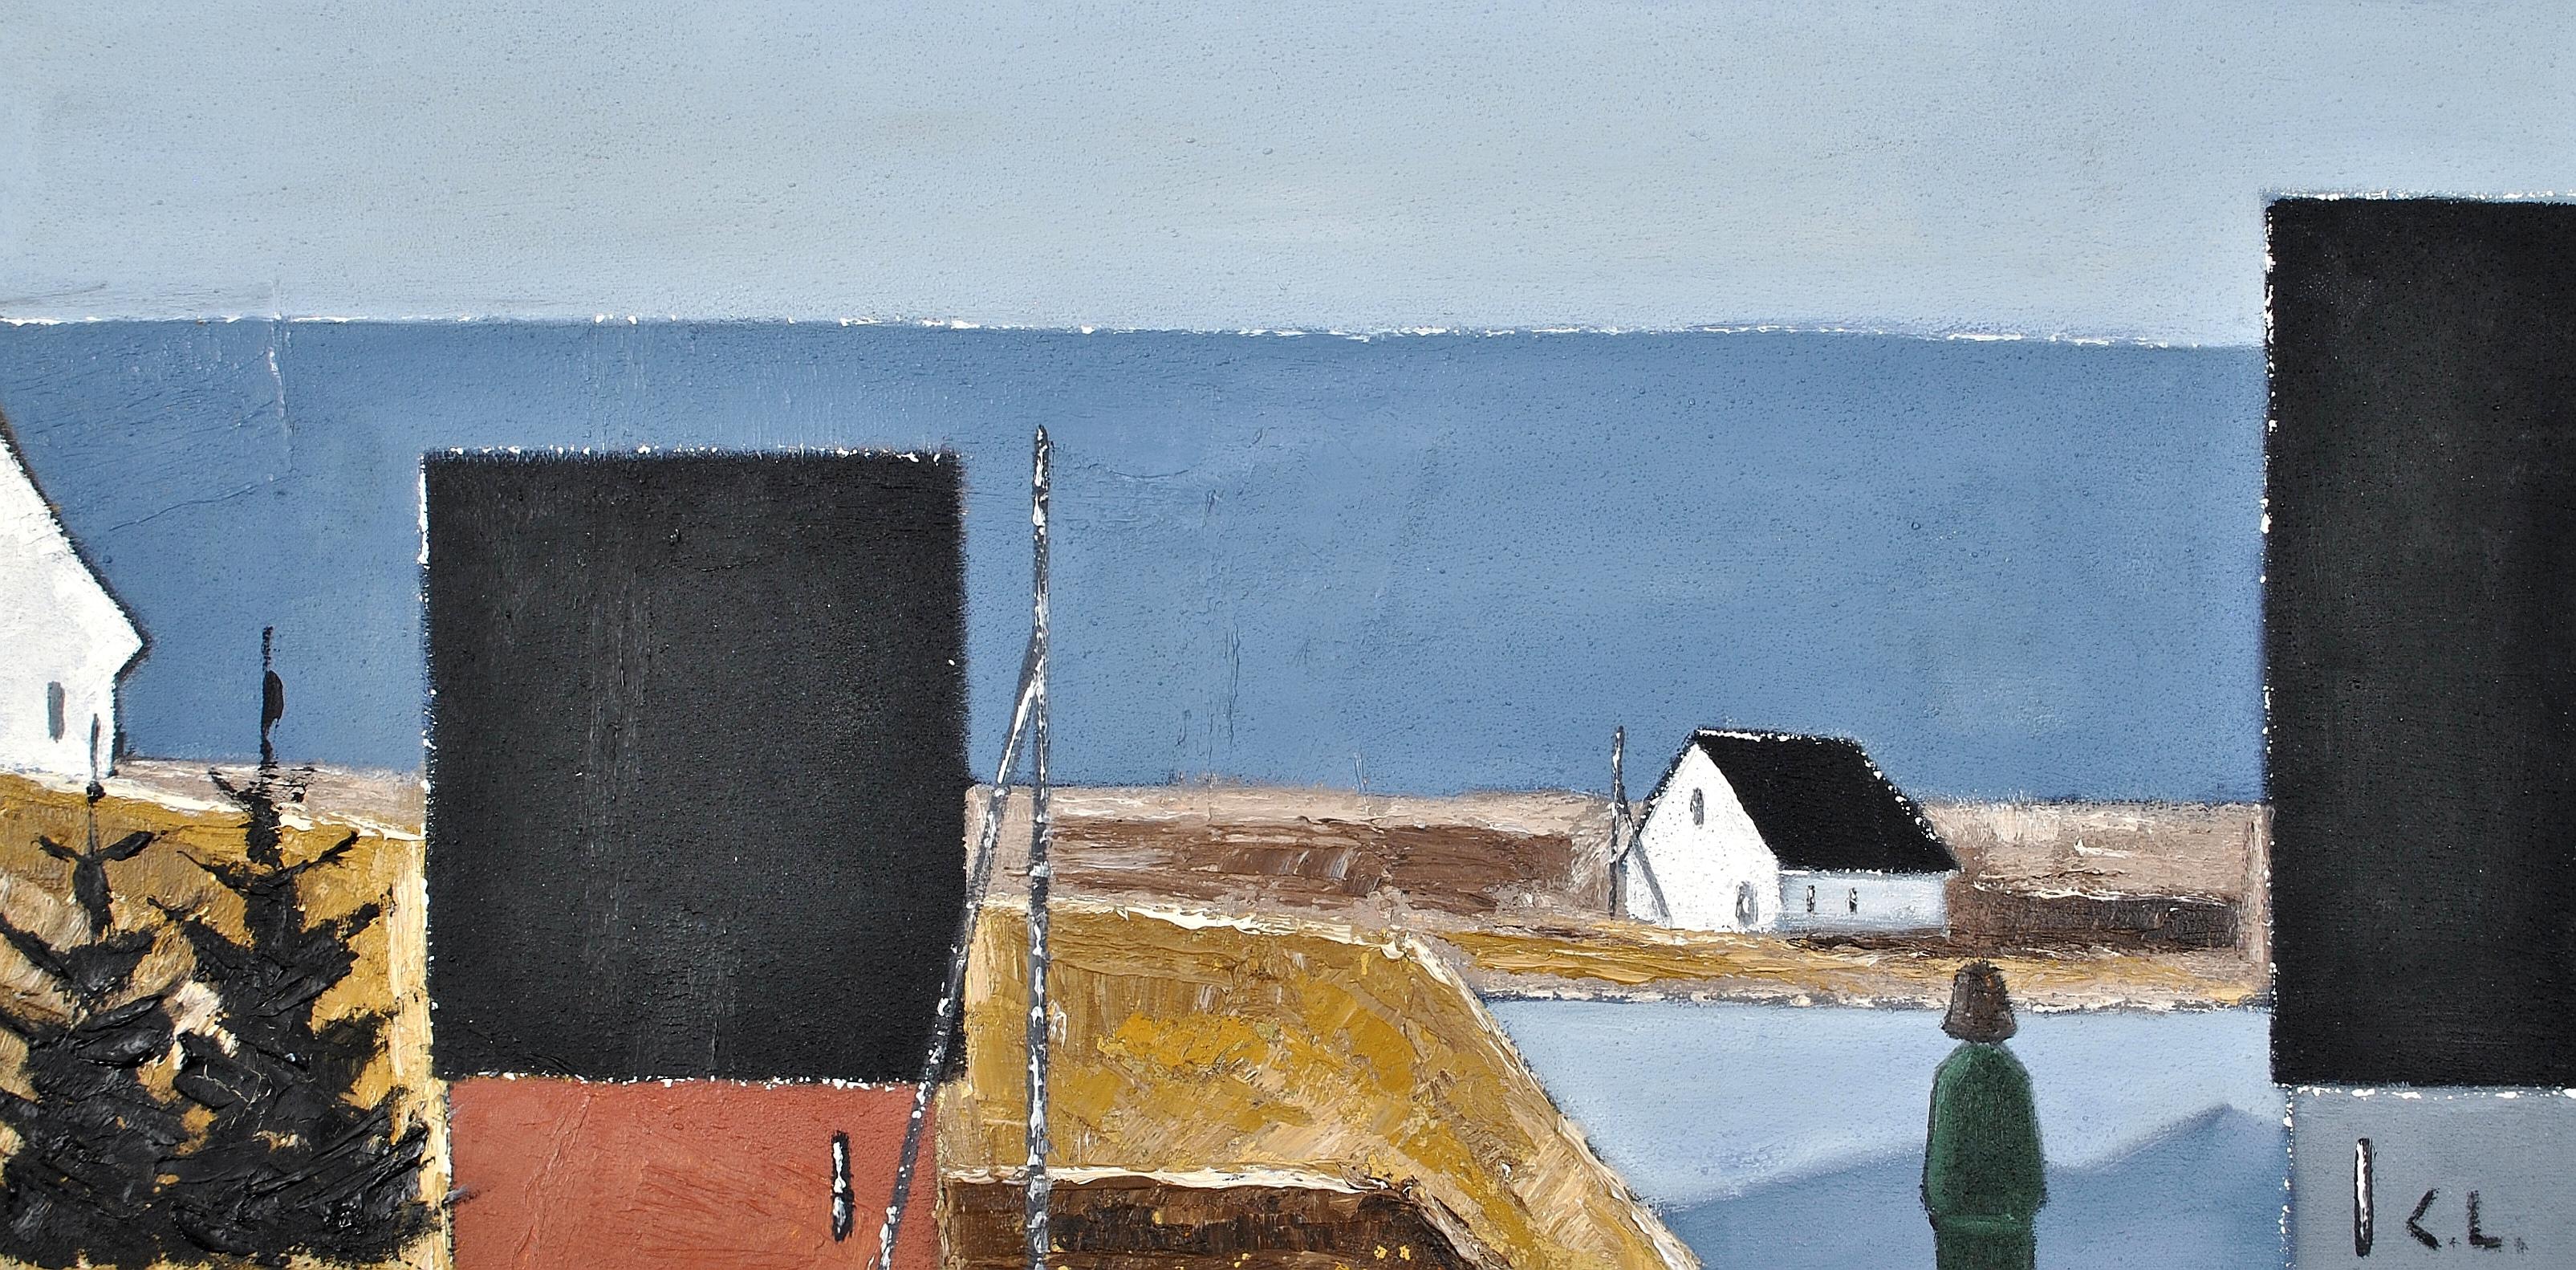 Paysage côtier - Grande peinture scandinave moderniste suédoise du milieu du siècle dernier - Painting de Mid 20th Century Swedish School